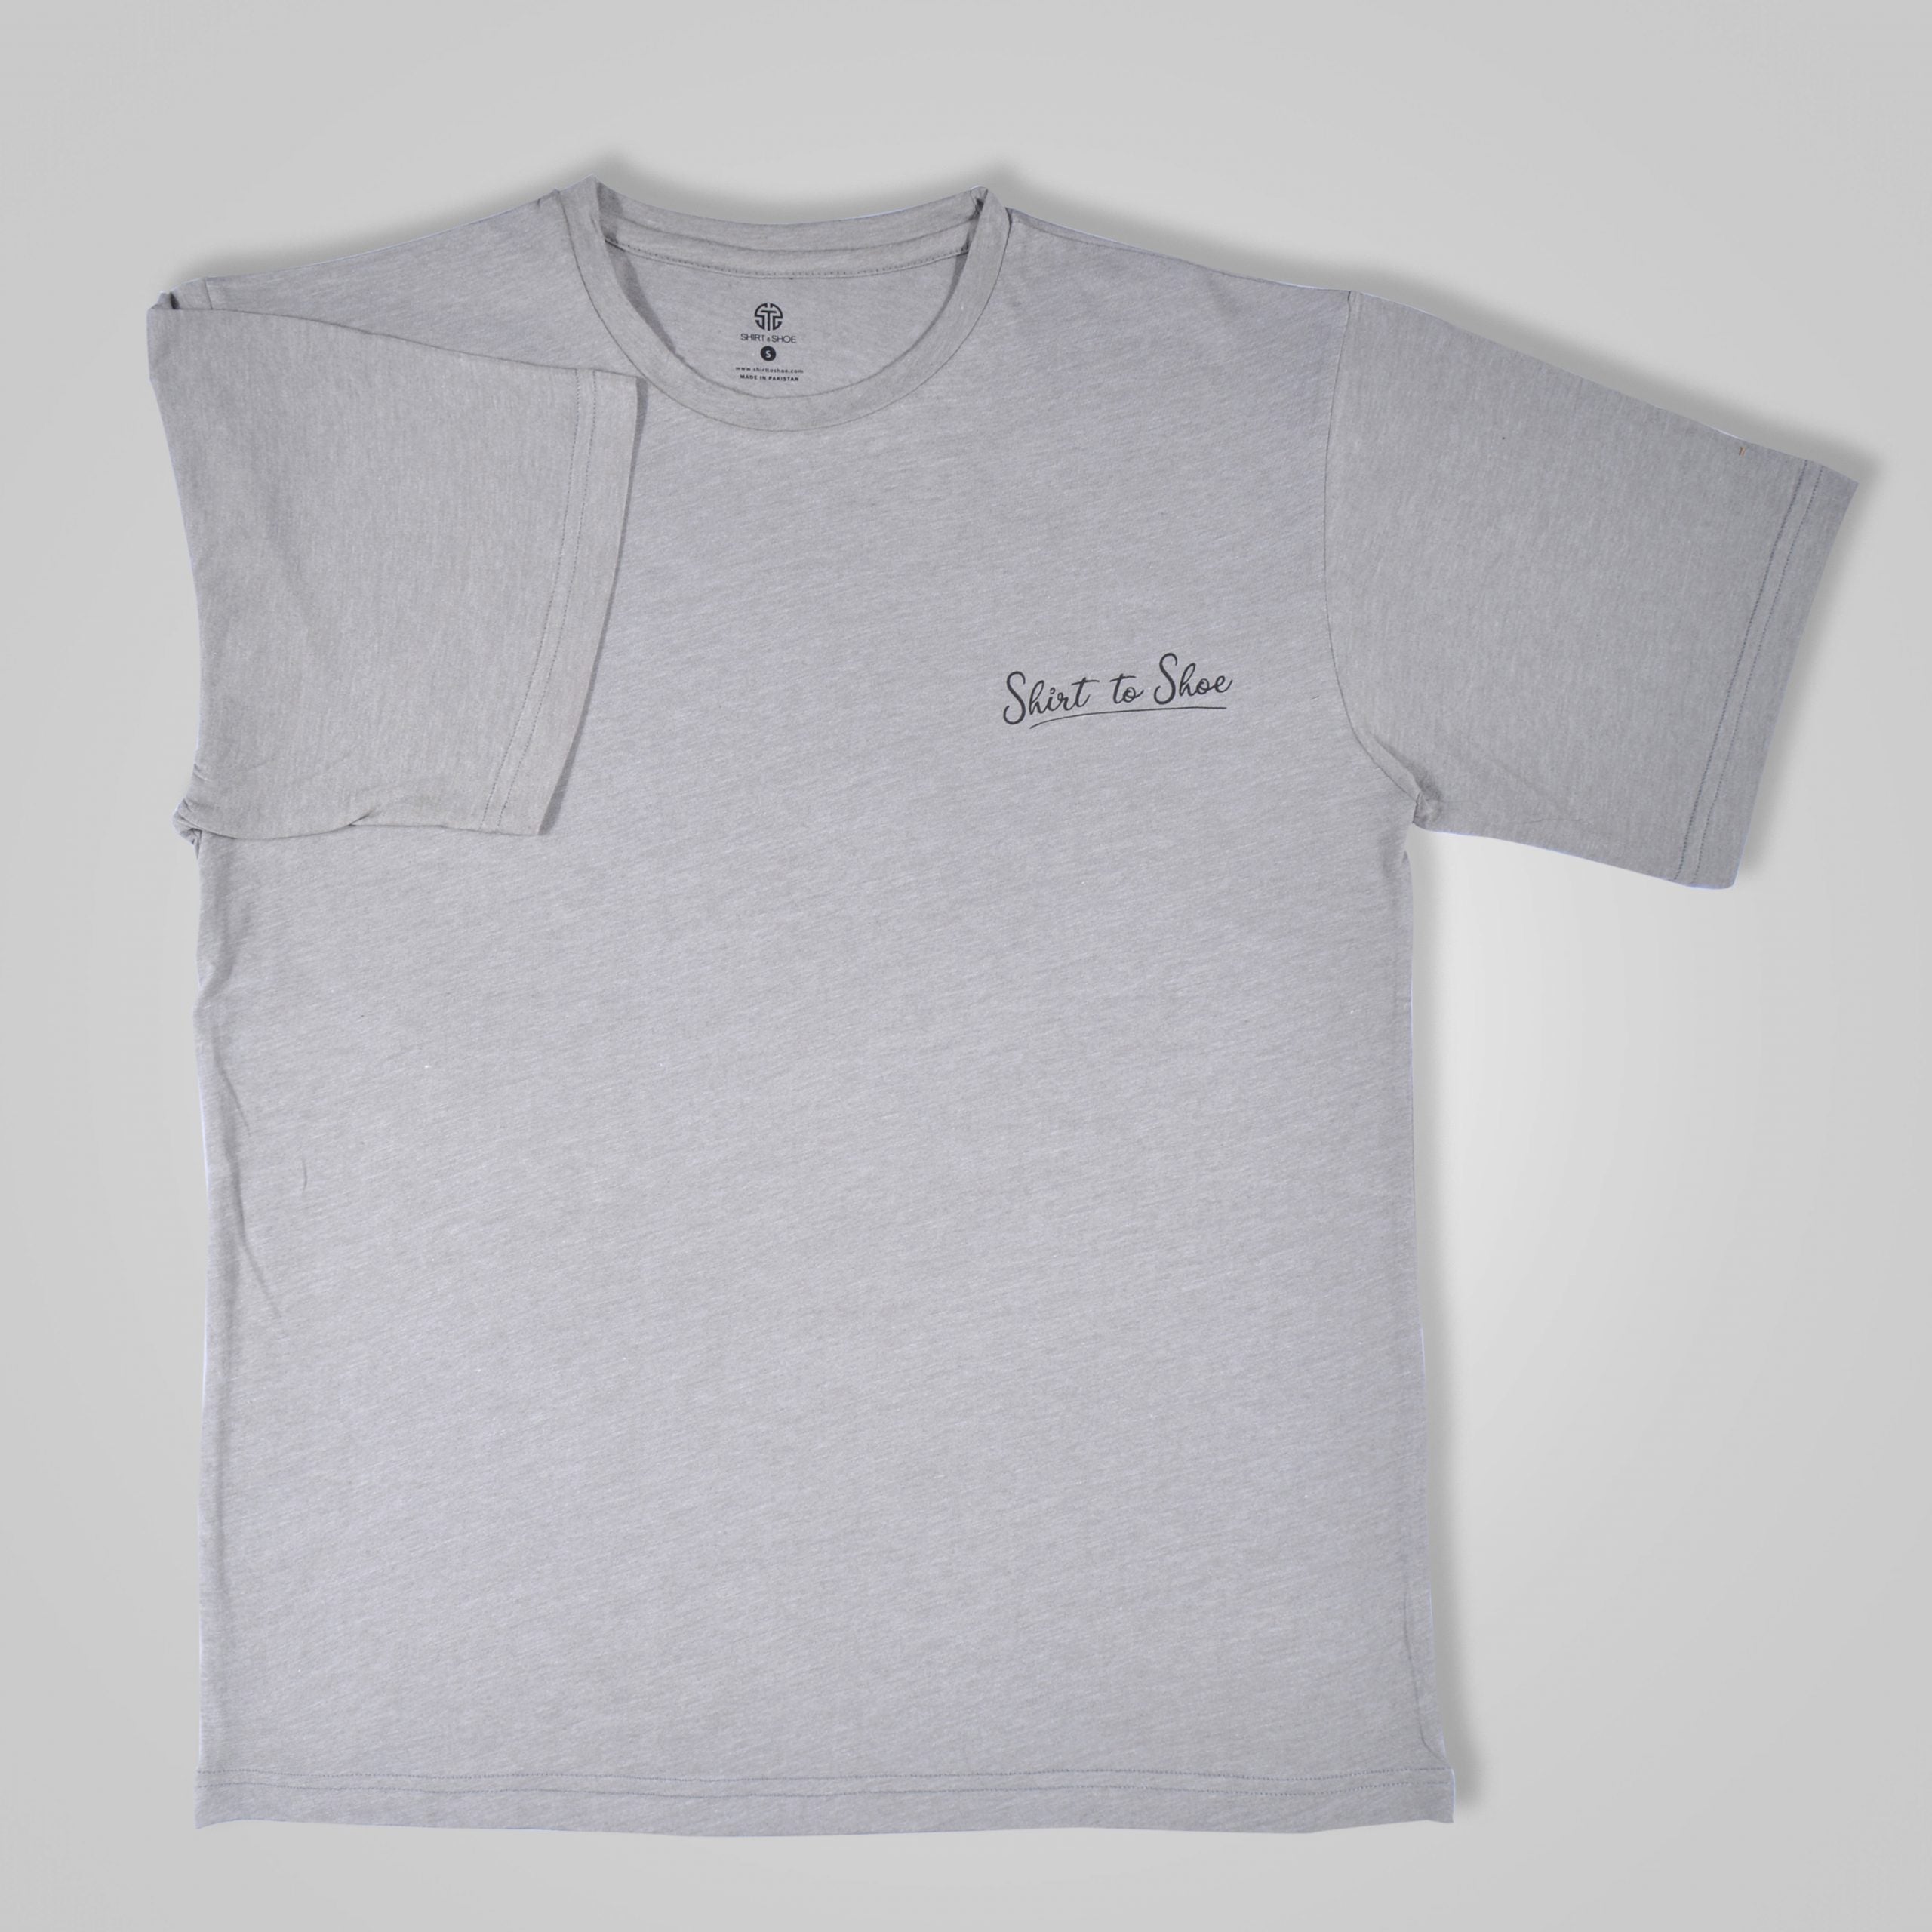 Light Gray T-Shirt - Code 14